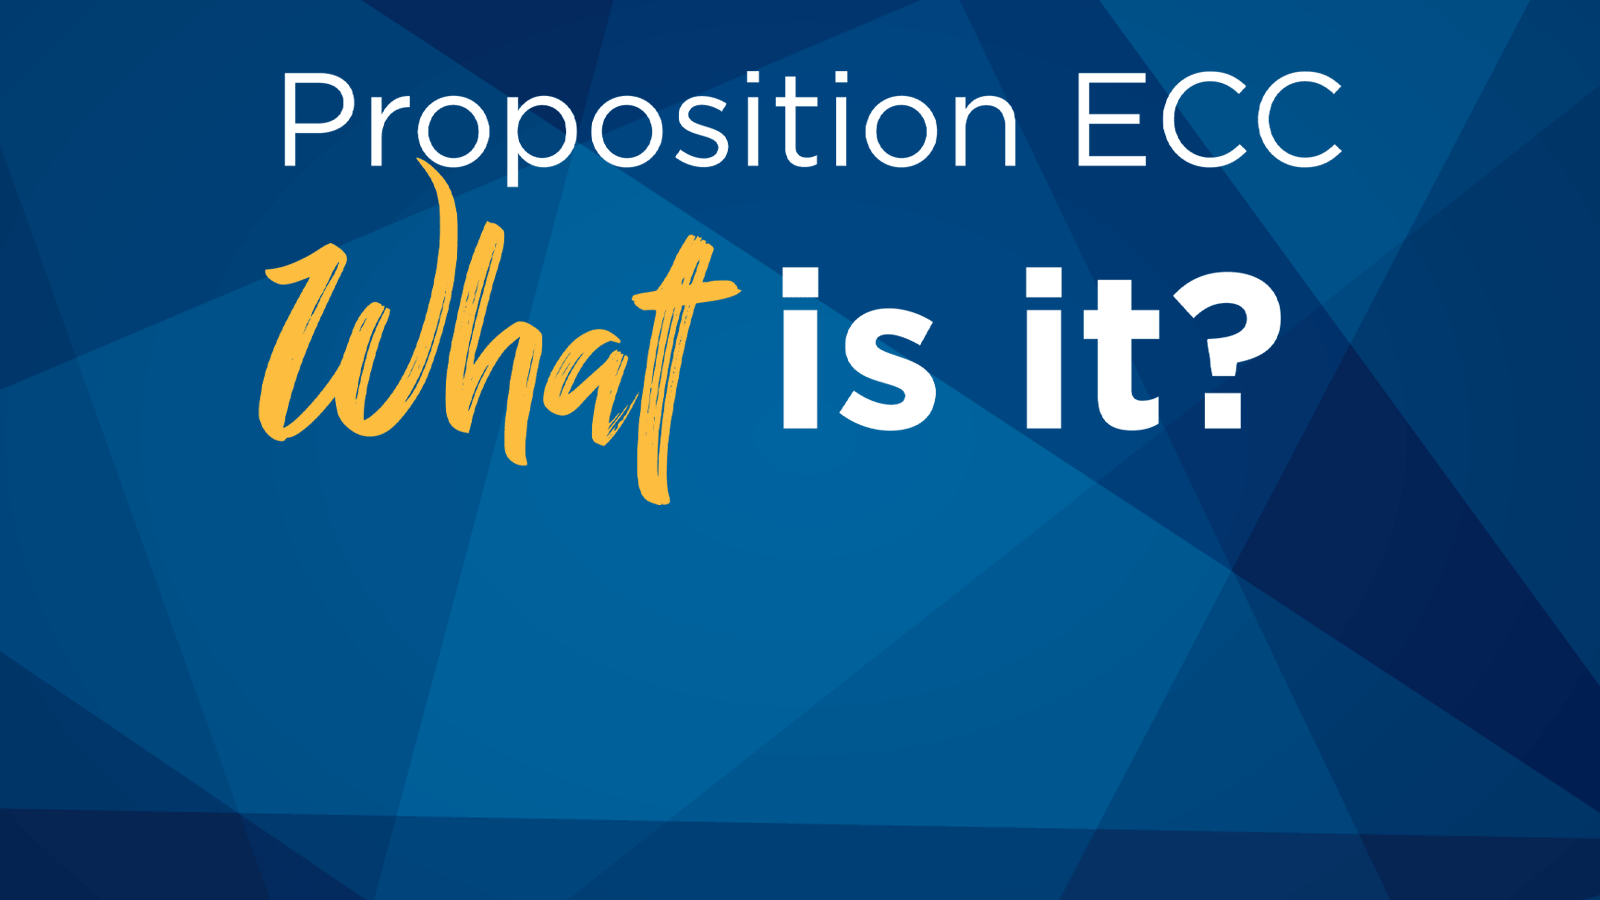 Proposition ECC: What is it?